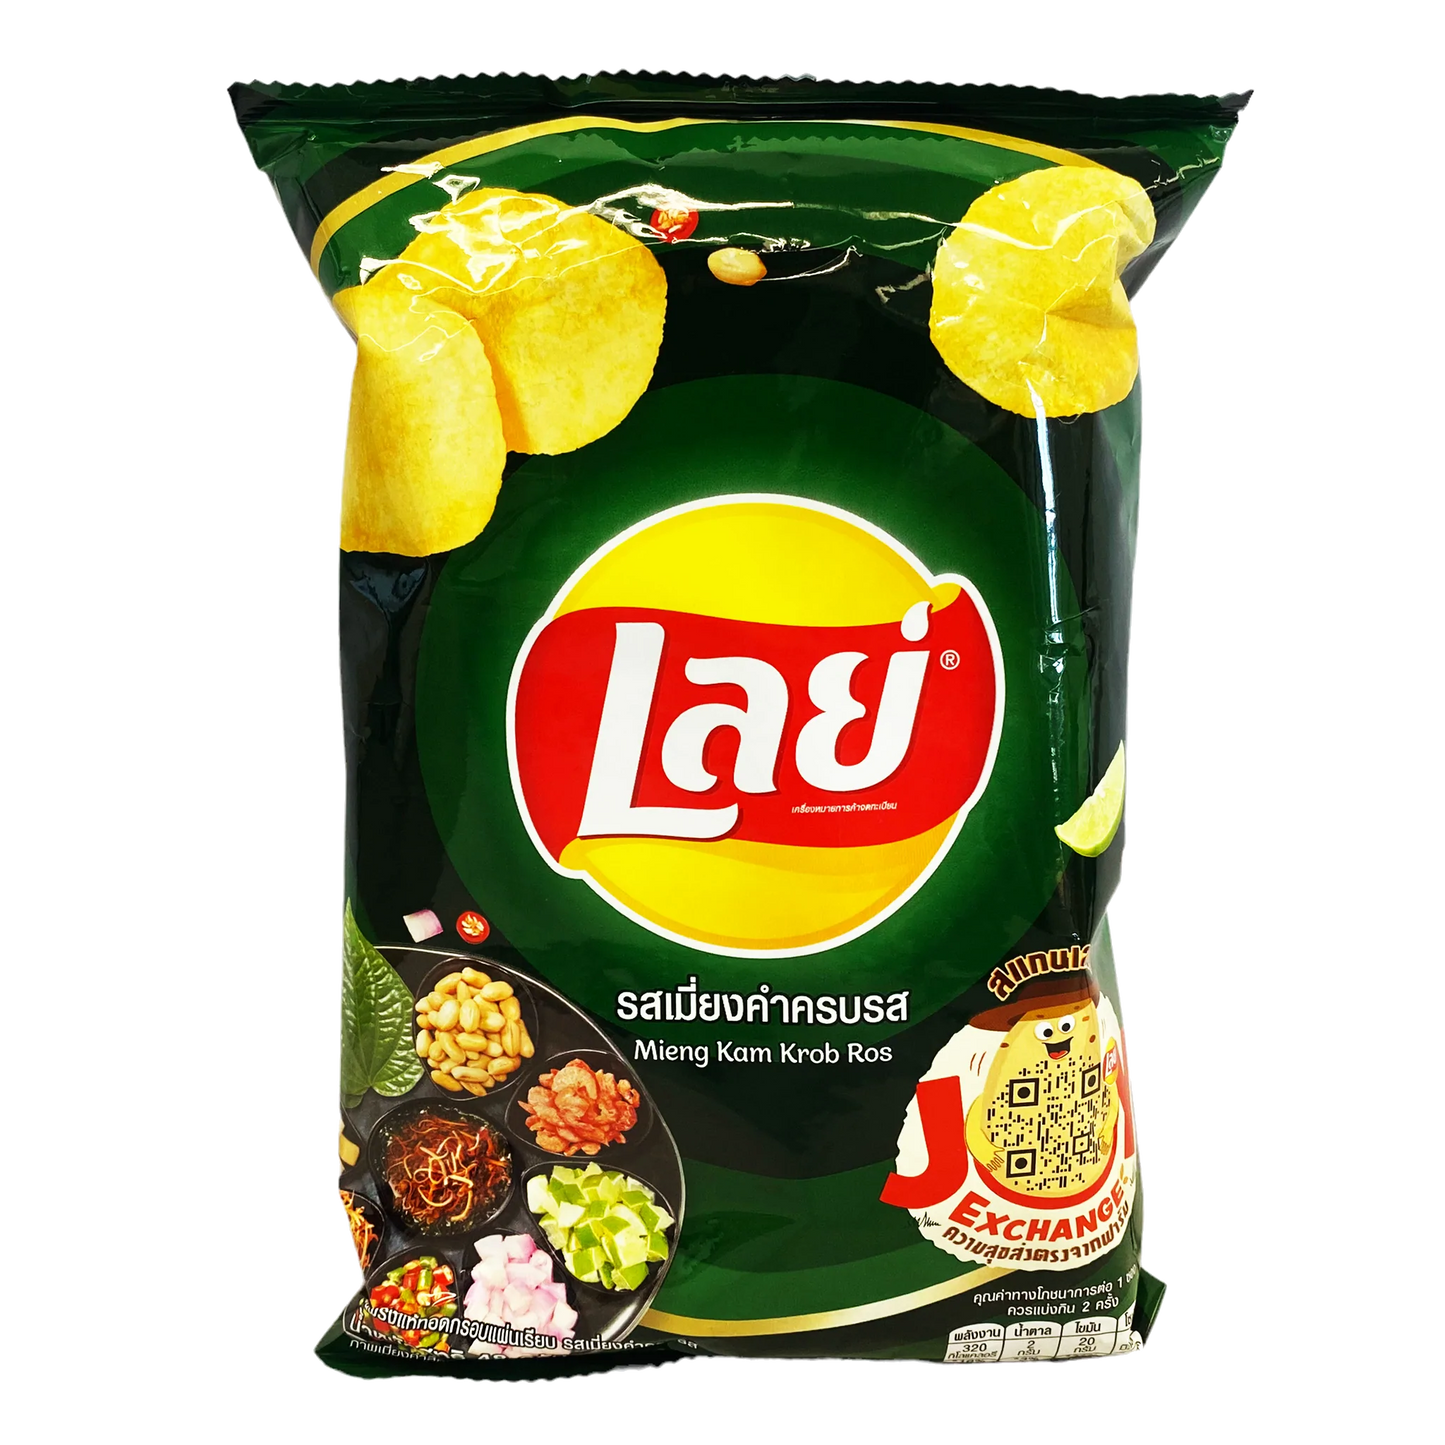 Lay's  - Mieng Kam Krob Ros - Product Of Tiawan